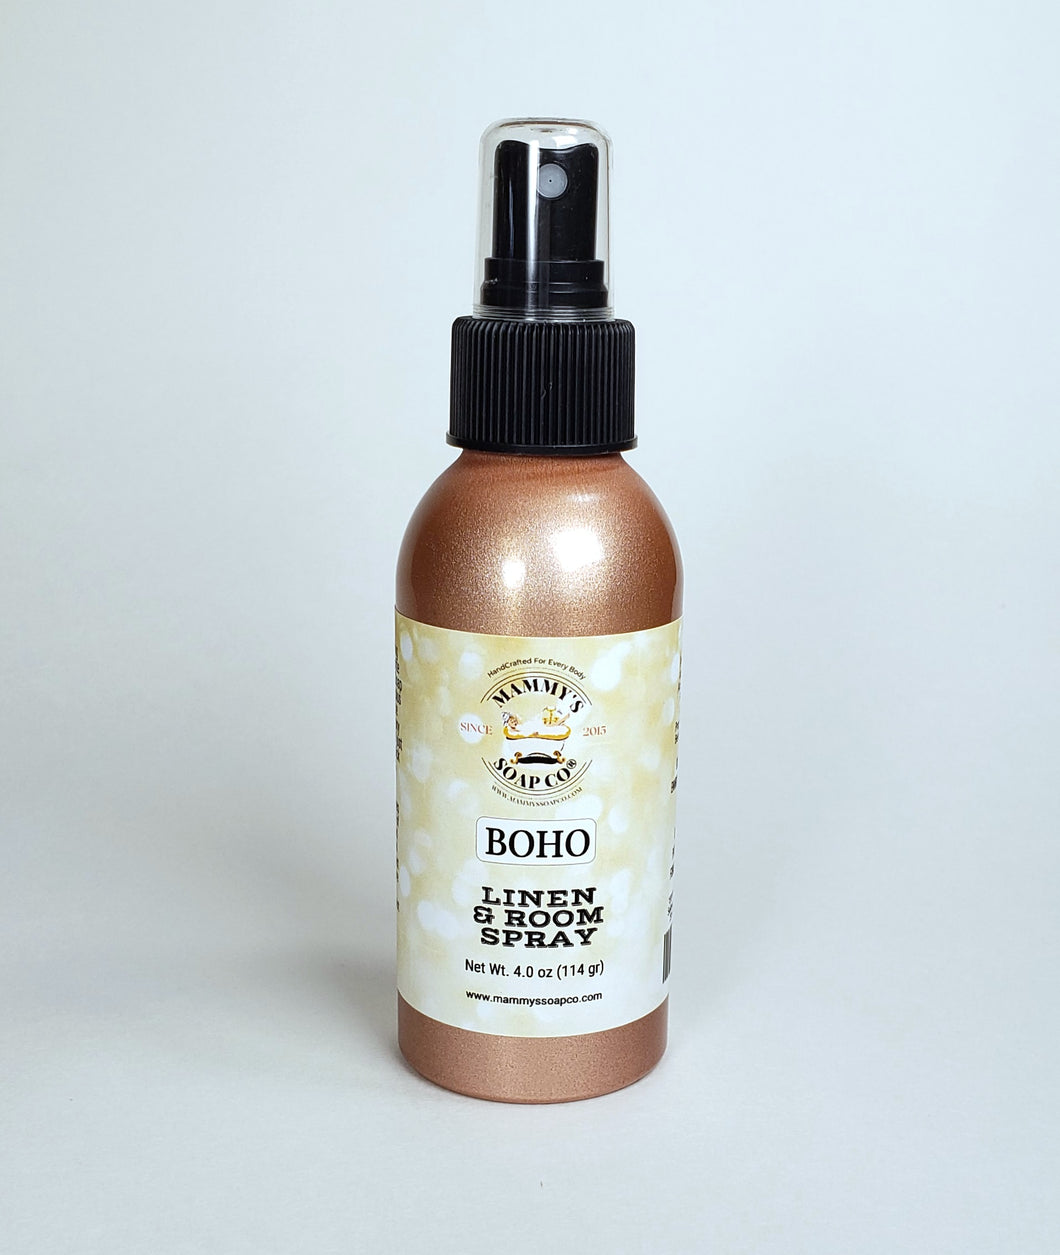 Boho Linen & Room Spray